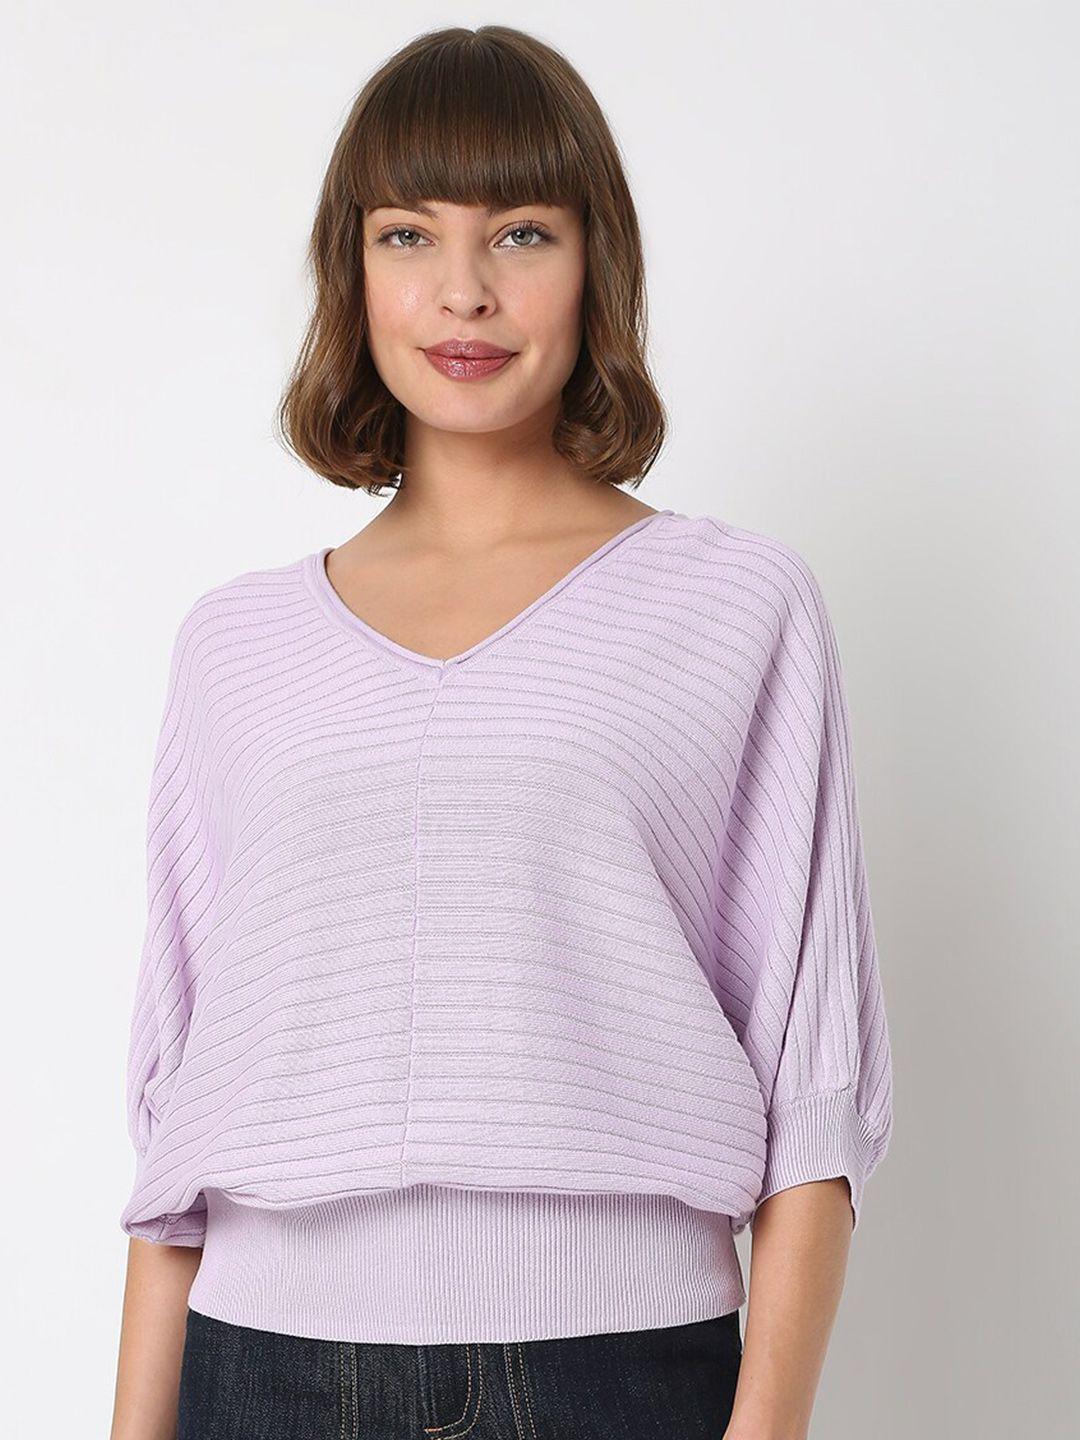 Vero Moda Women Purple Striped Cotton Pullover